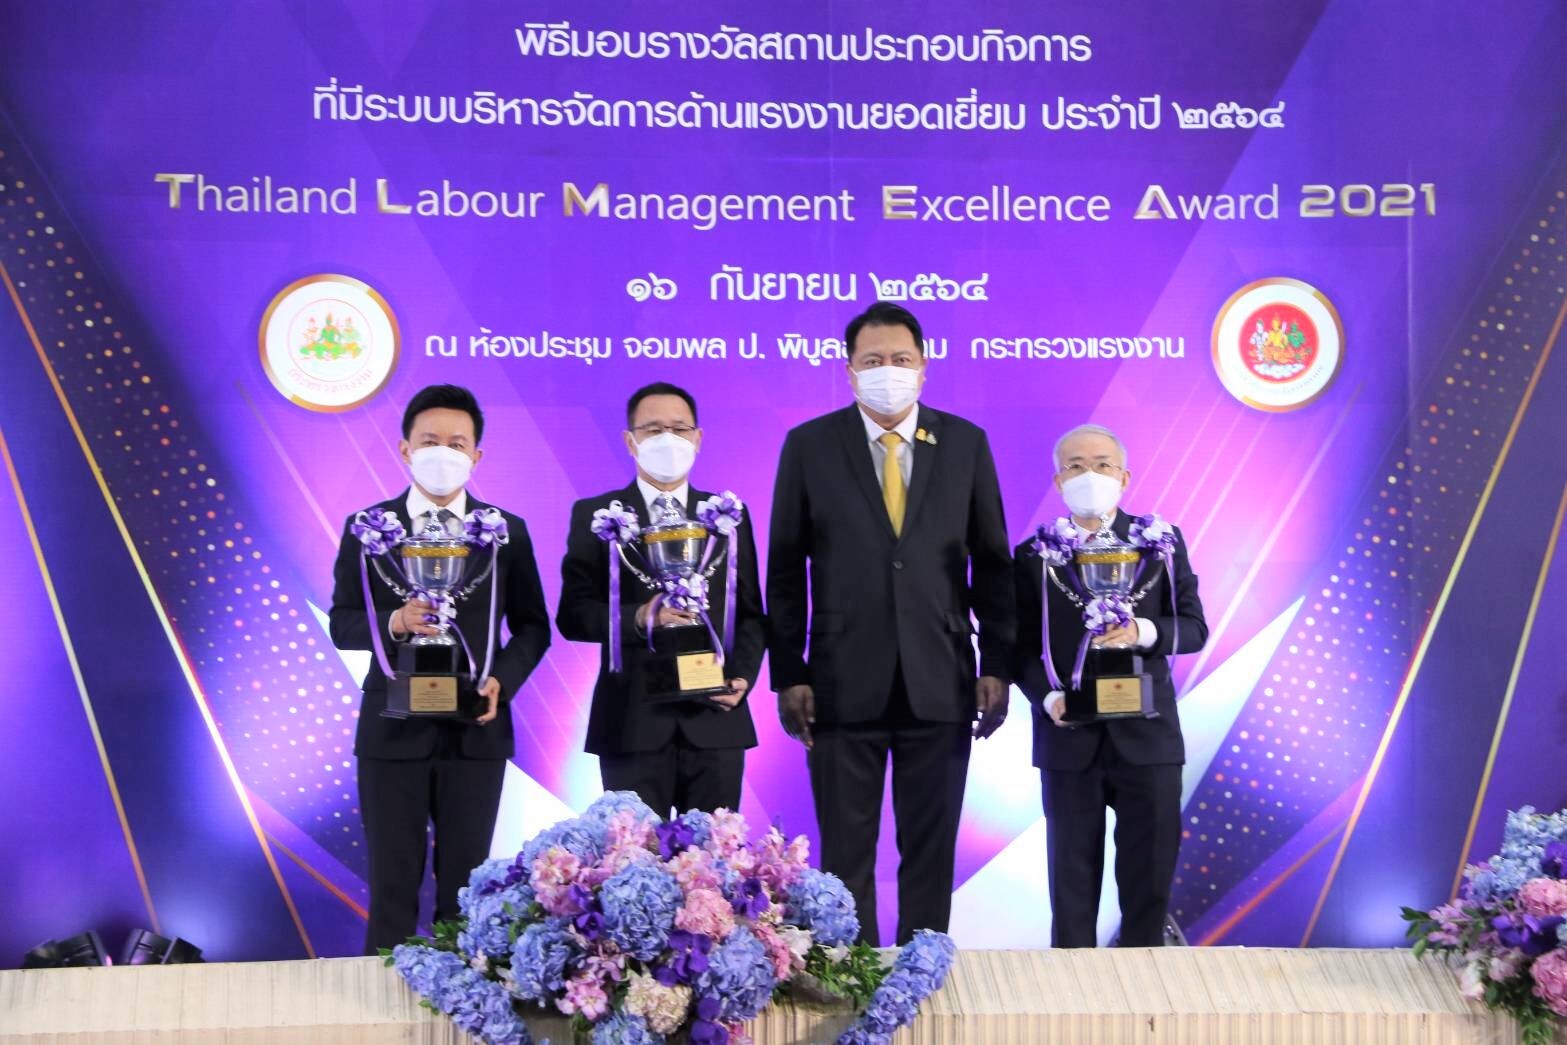 ก.แรงงาน จัดงาน Thailand Labour Management Excellence Award 2021 สถานประกอบกิจการ 3 แห่ง รับถ้วยรางวัลพระราชทานฯ